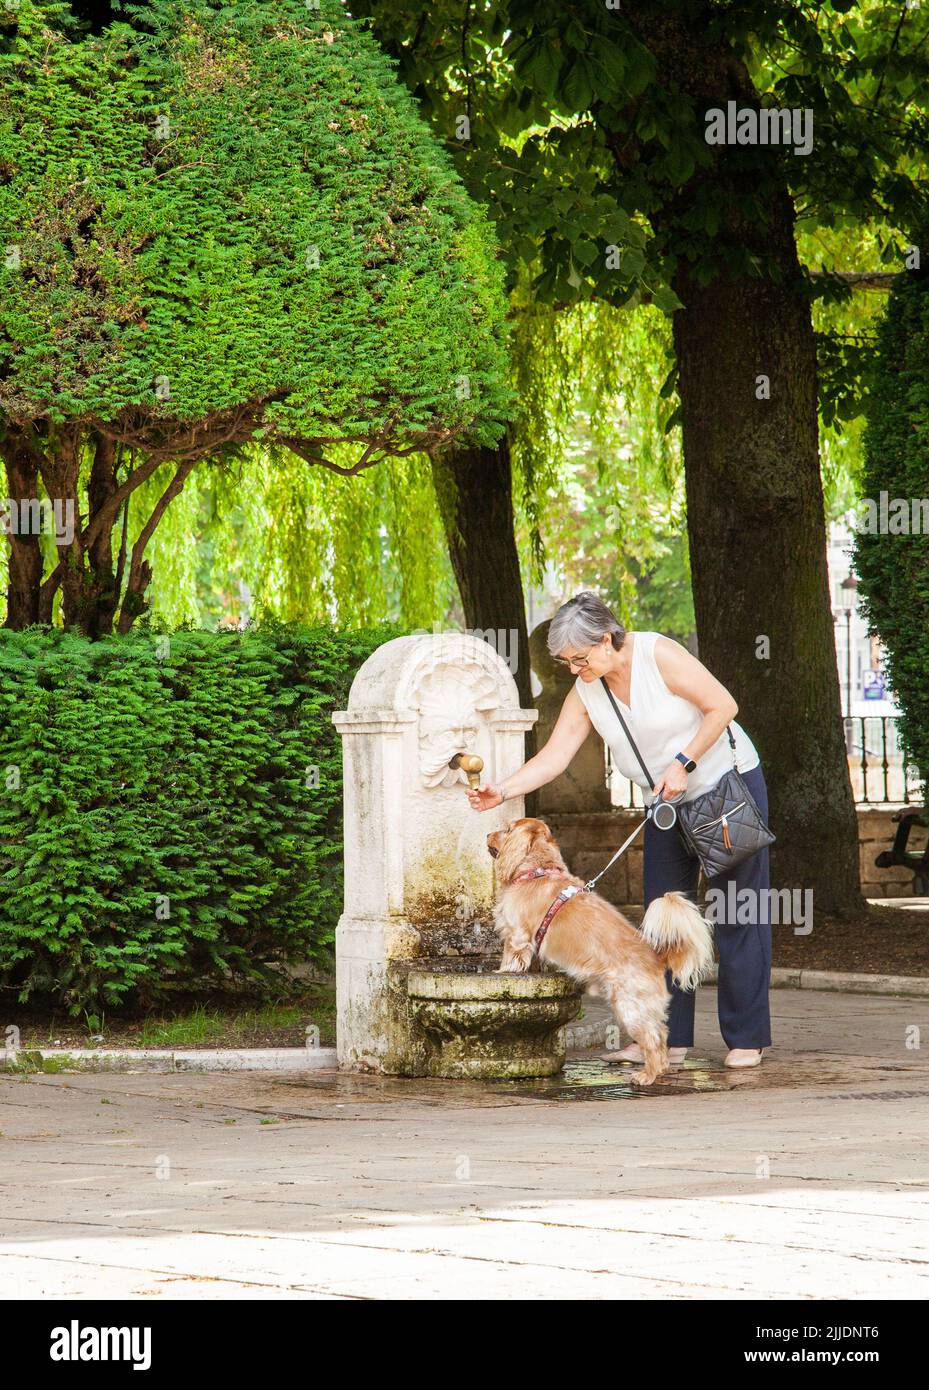 Chien buvant d'une fontaine dans la ville espagnole de Burgos Espagne Banque D'Images